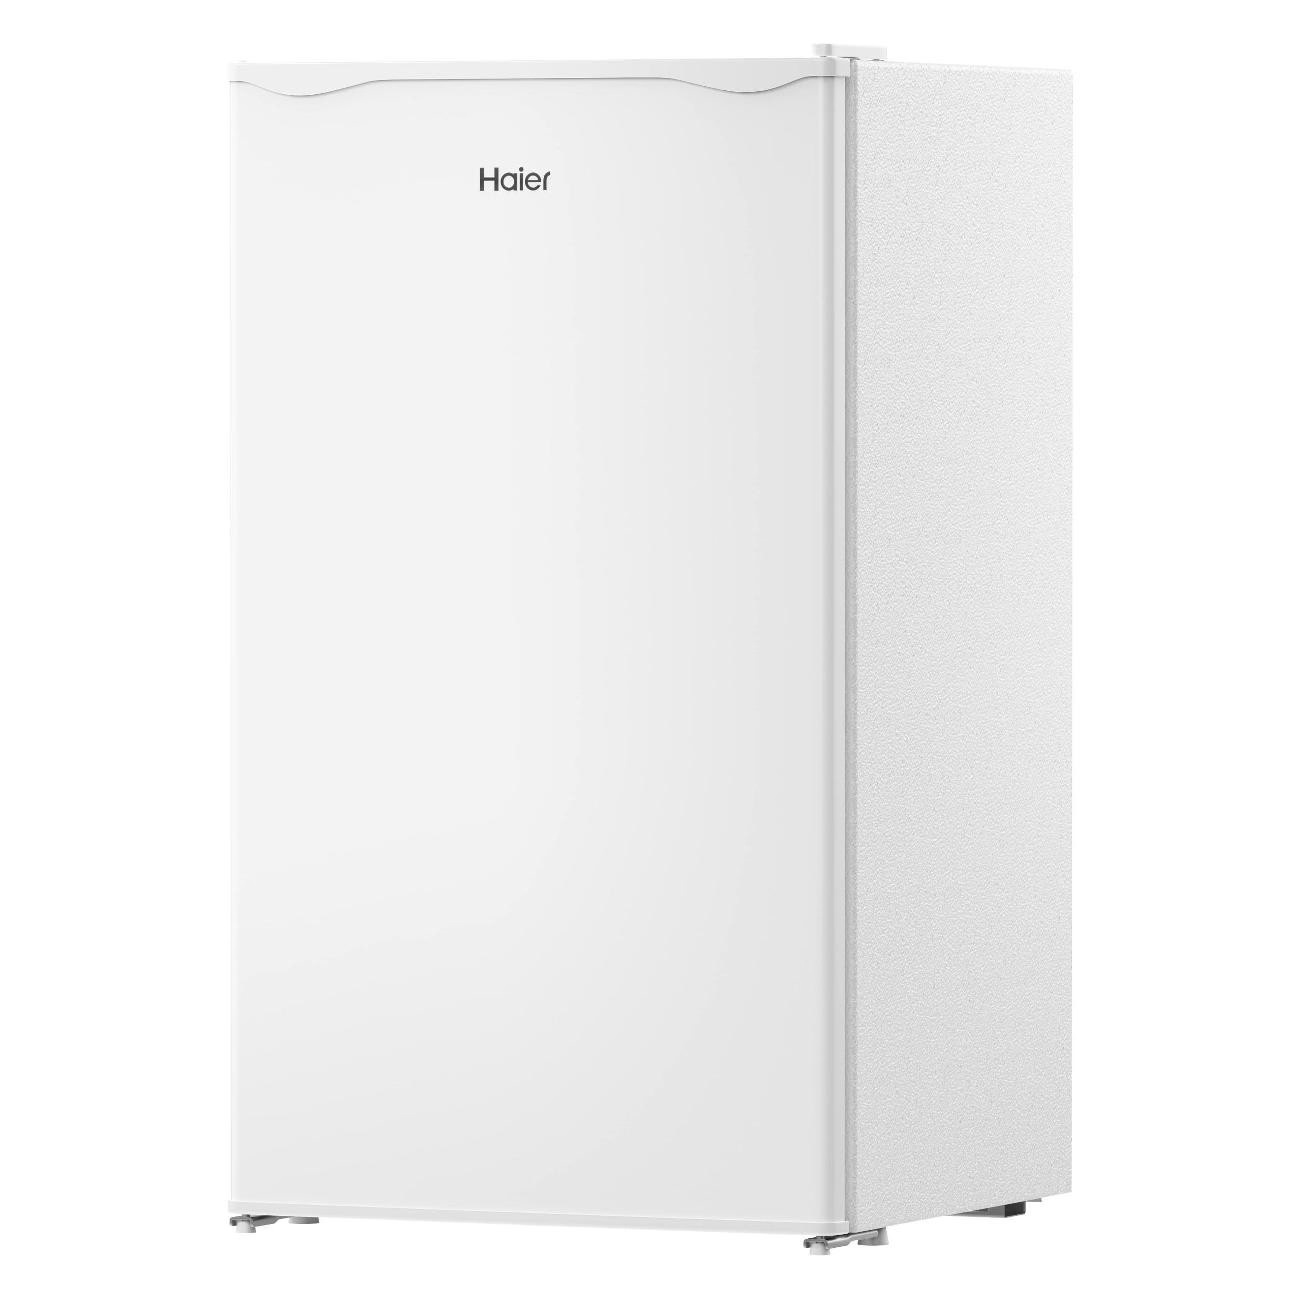 Холодильник Haier MSR115 белый холодильник haier msr115 белый